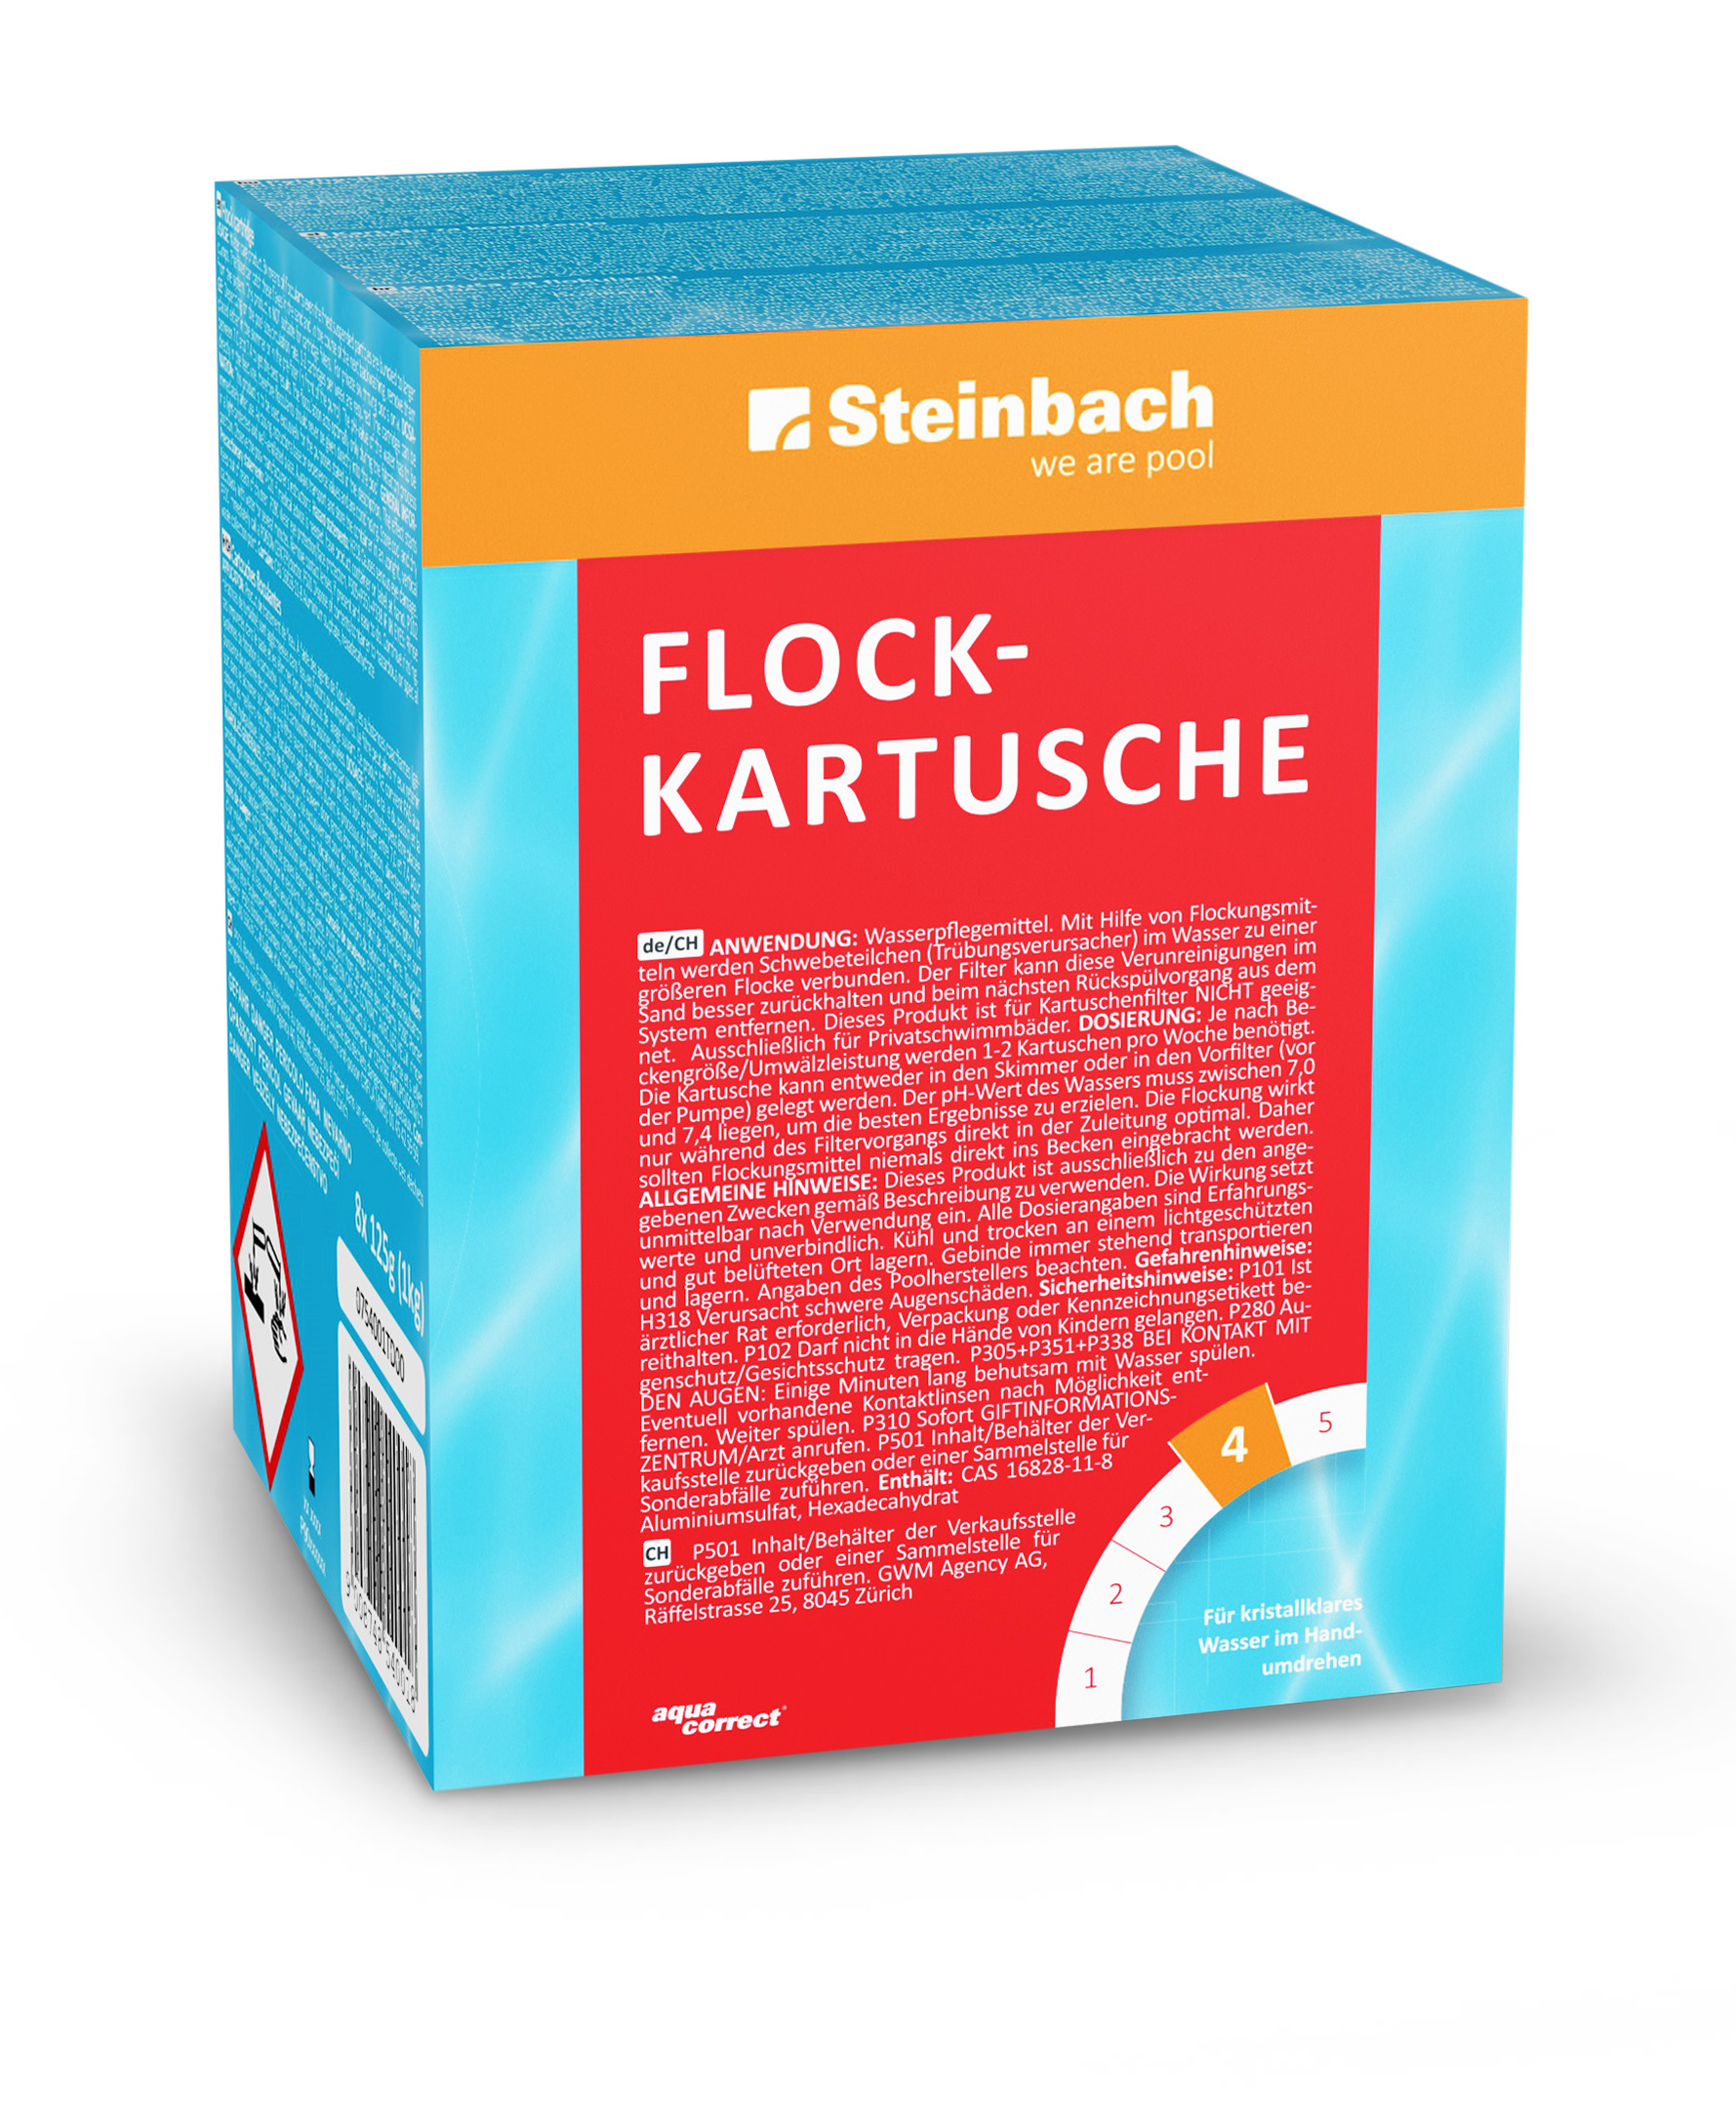 Steinbach Flockkartusche 8x125 g